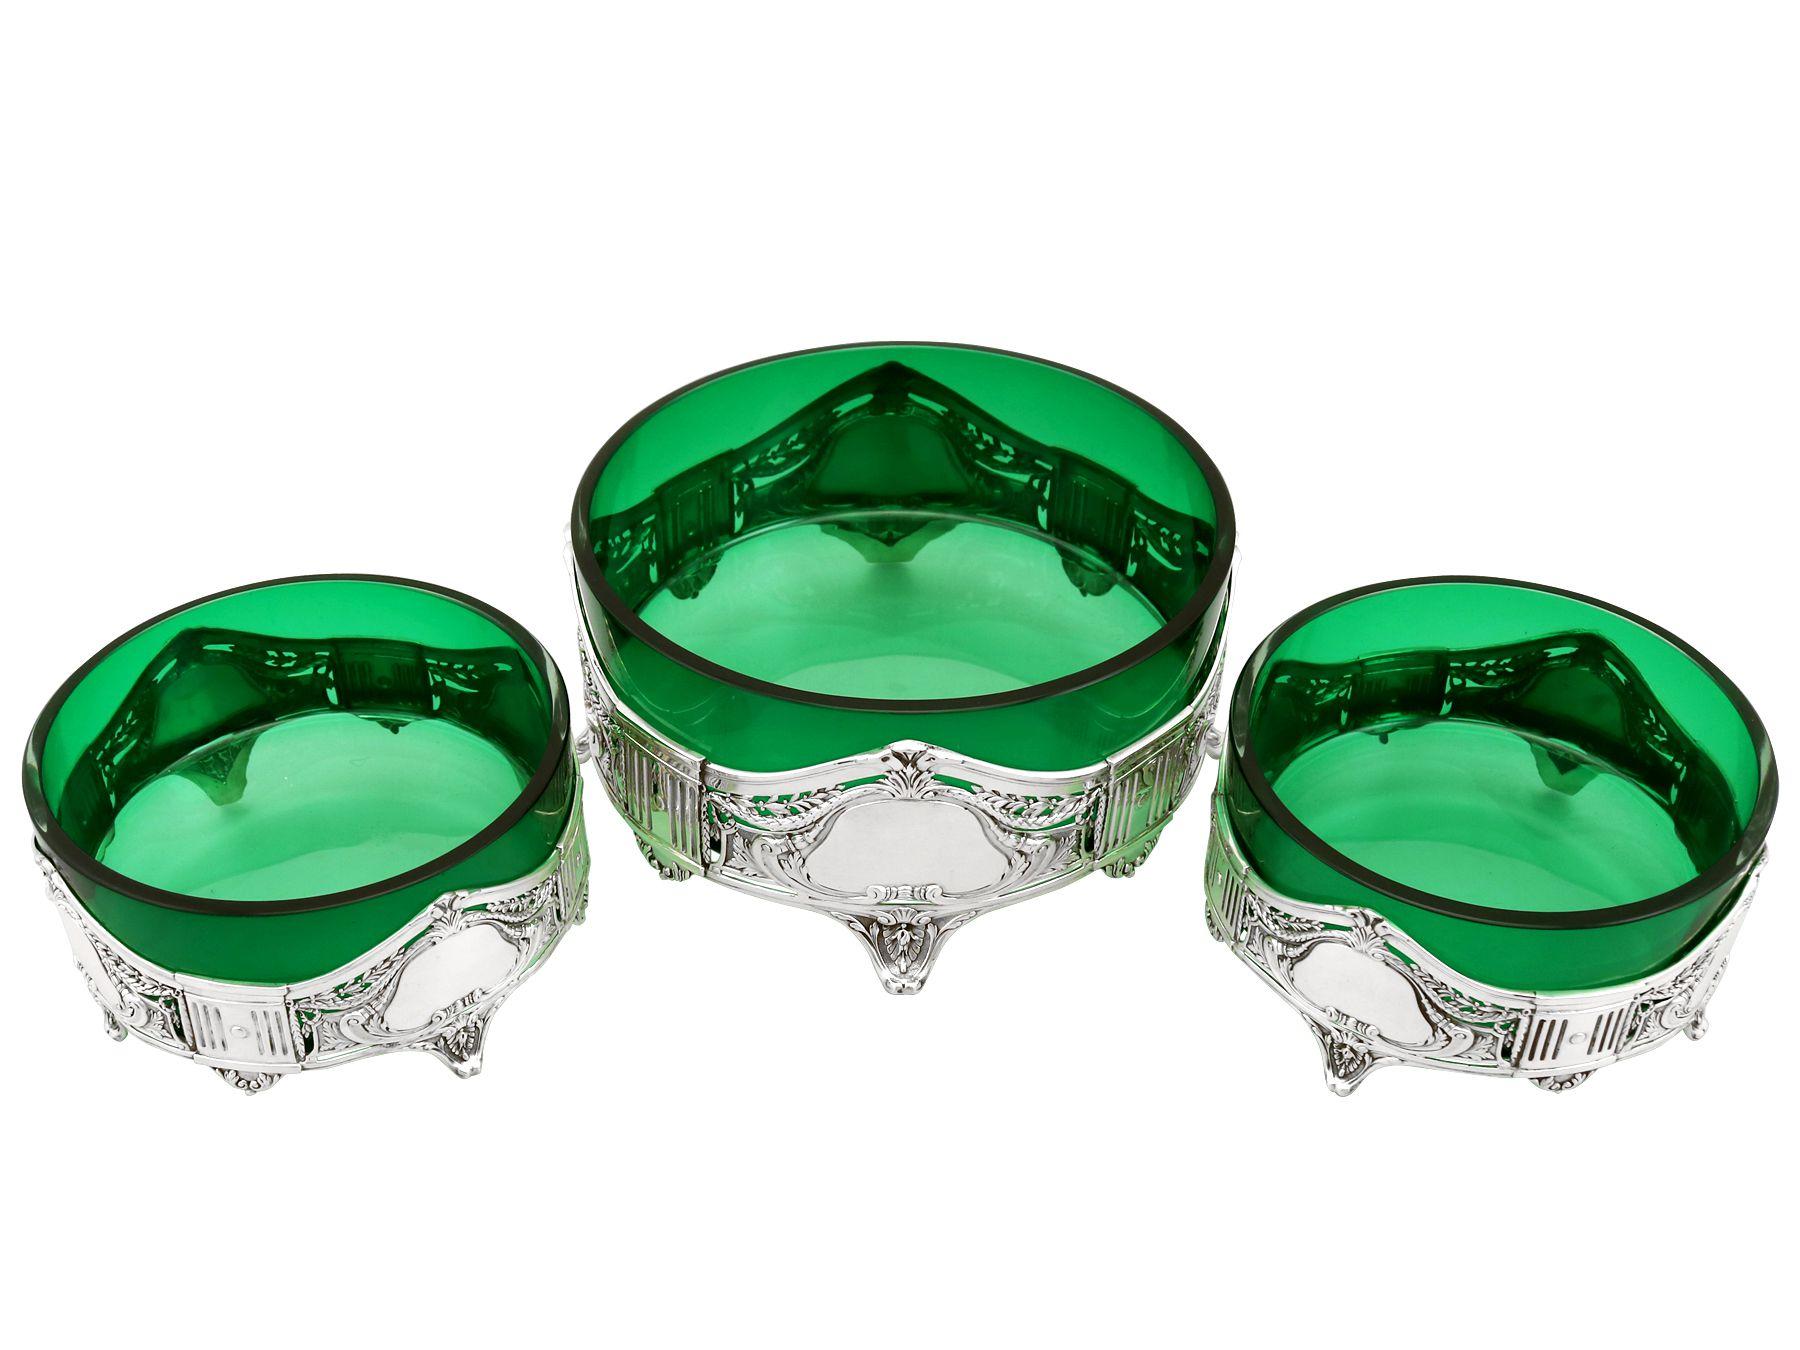 Une belle et impressionnante suite de trois plats anciens allemands en argent et verre vert, dans le style Art Nouveau ; un ajout à notre collection d'argent et de verre.

Ces plats en argent et en verre vert, de style Art Nouveau, sont de forme